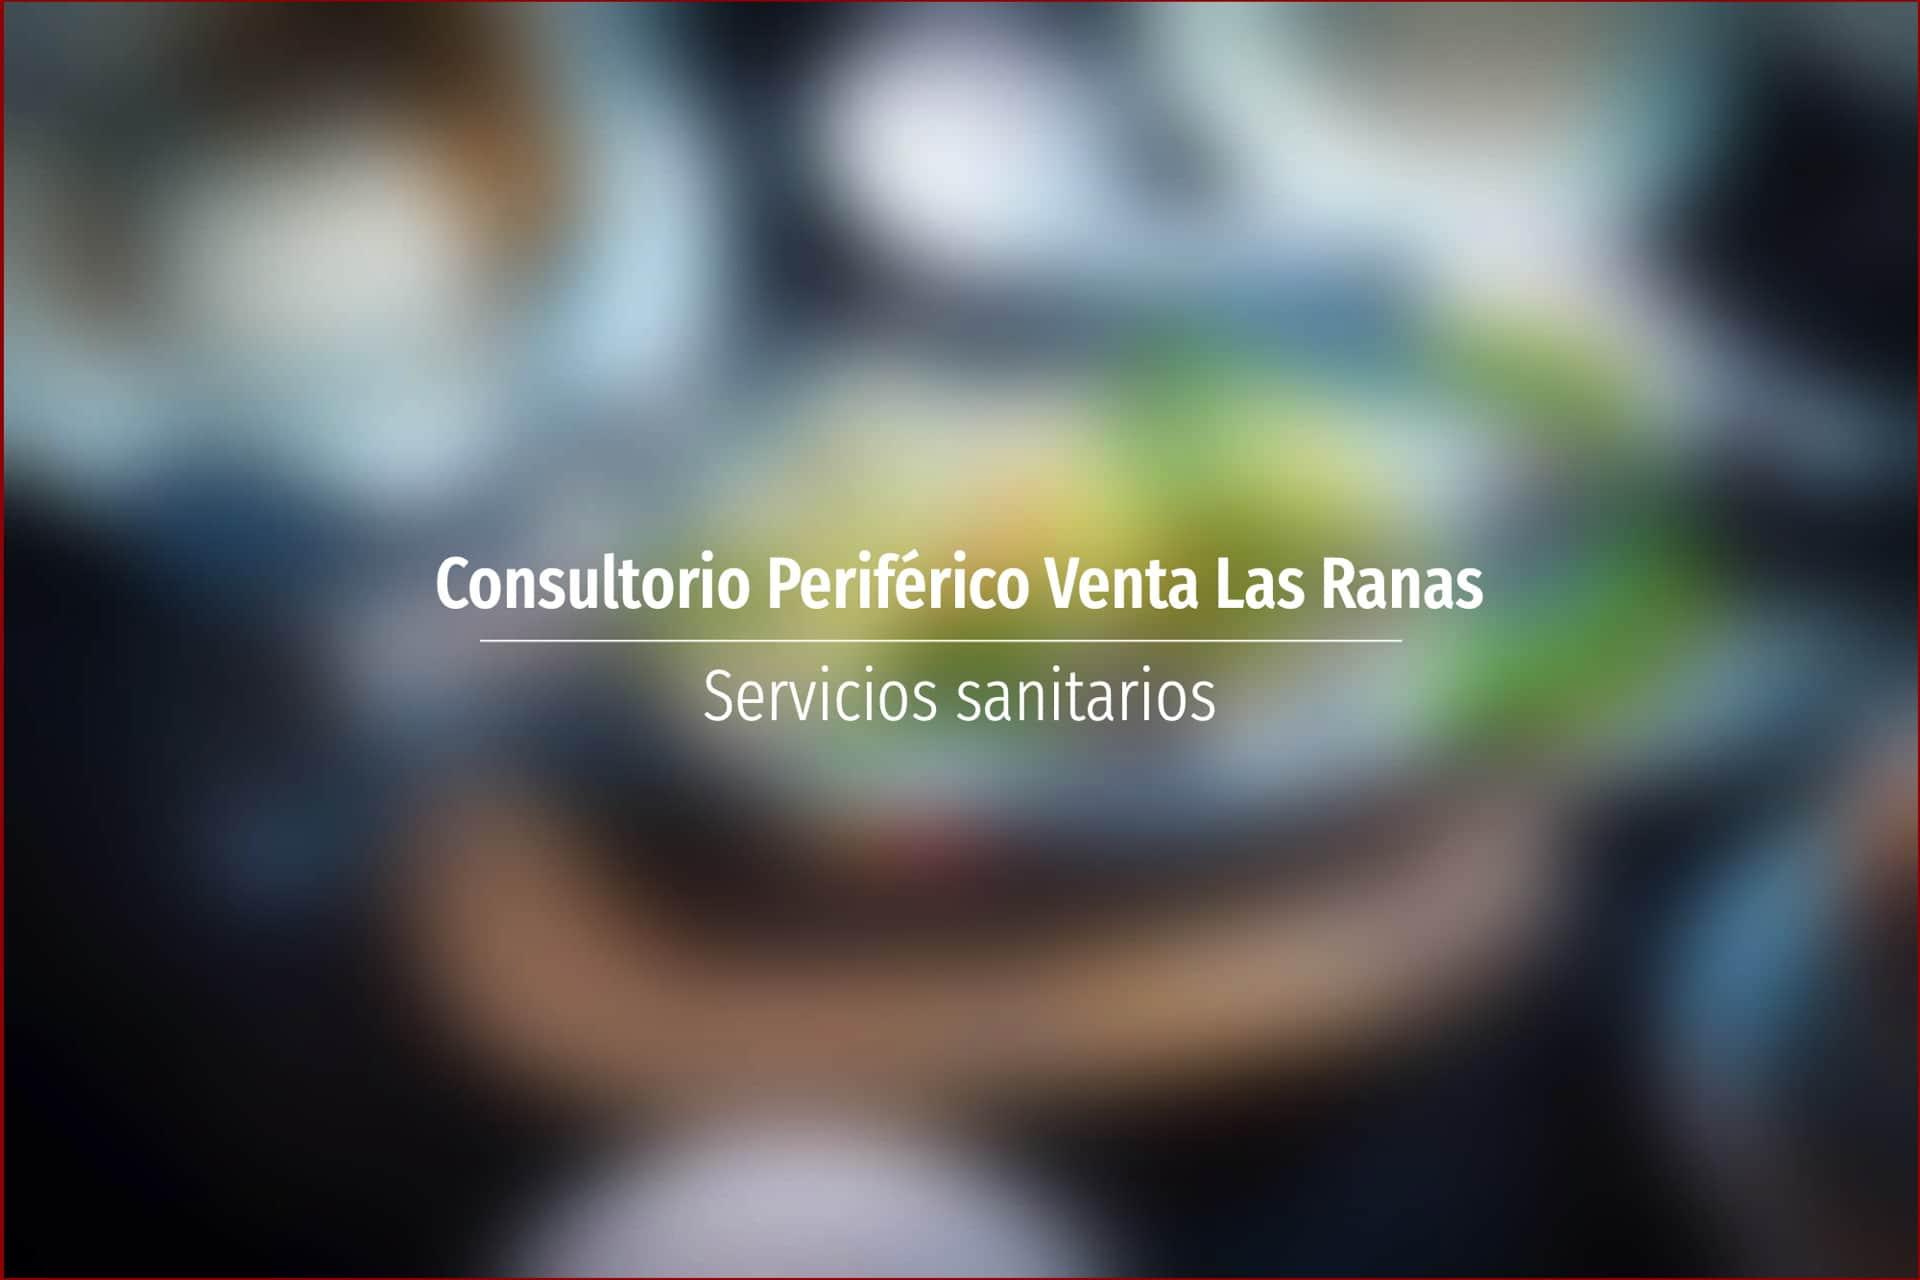 Consultorio Periférico Venta Las Ranas